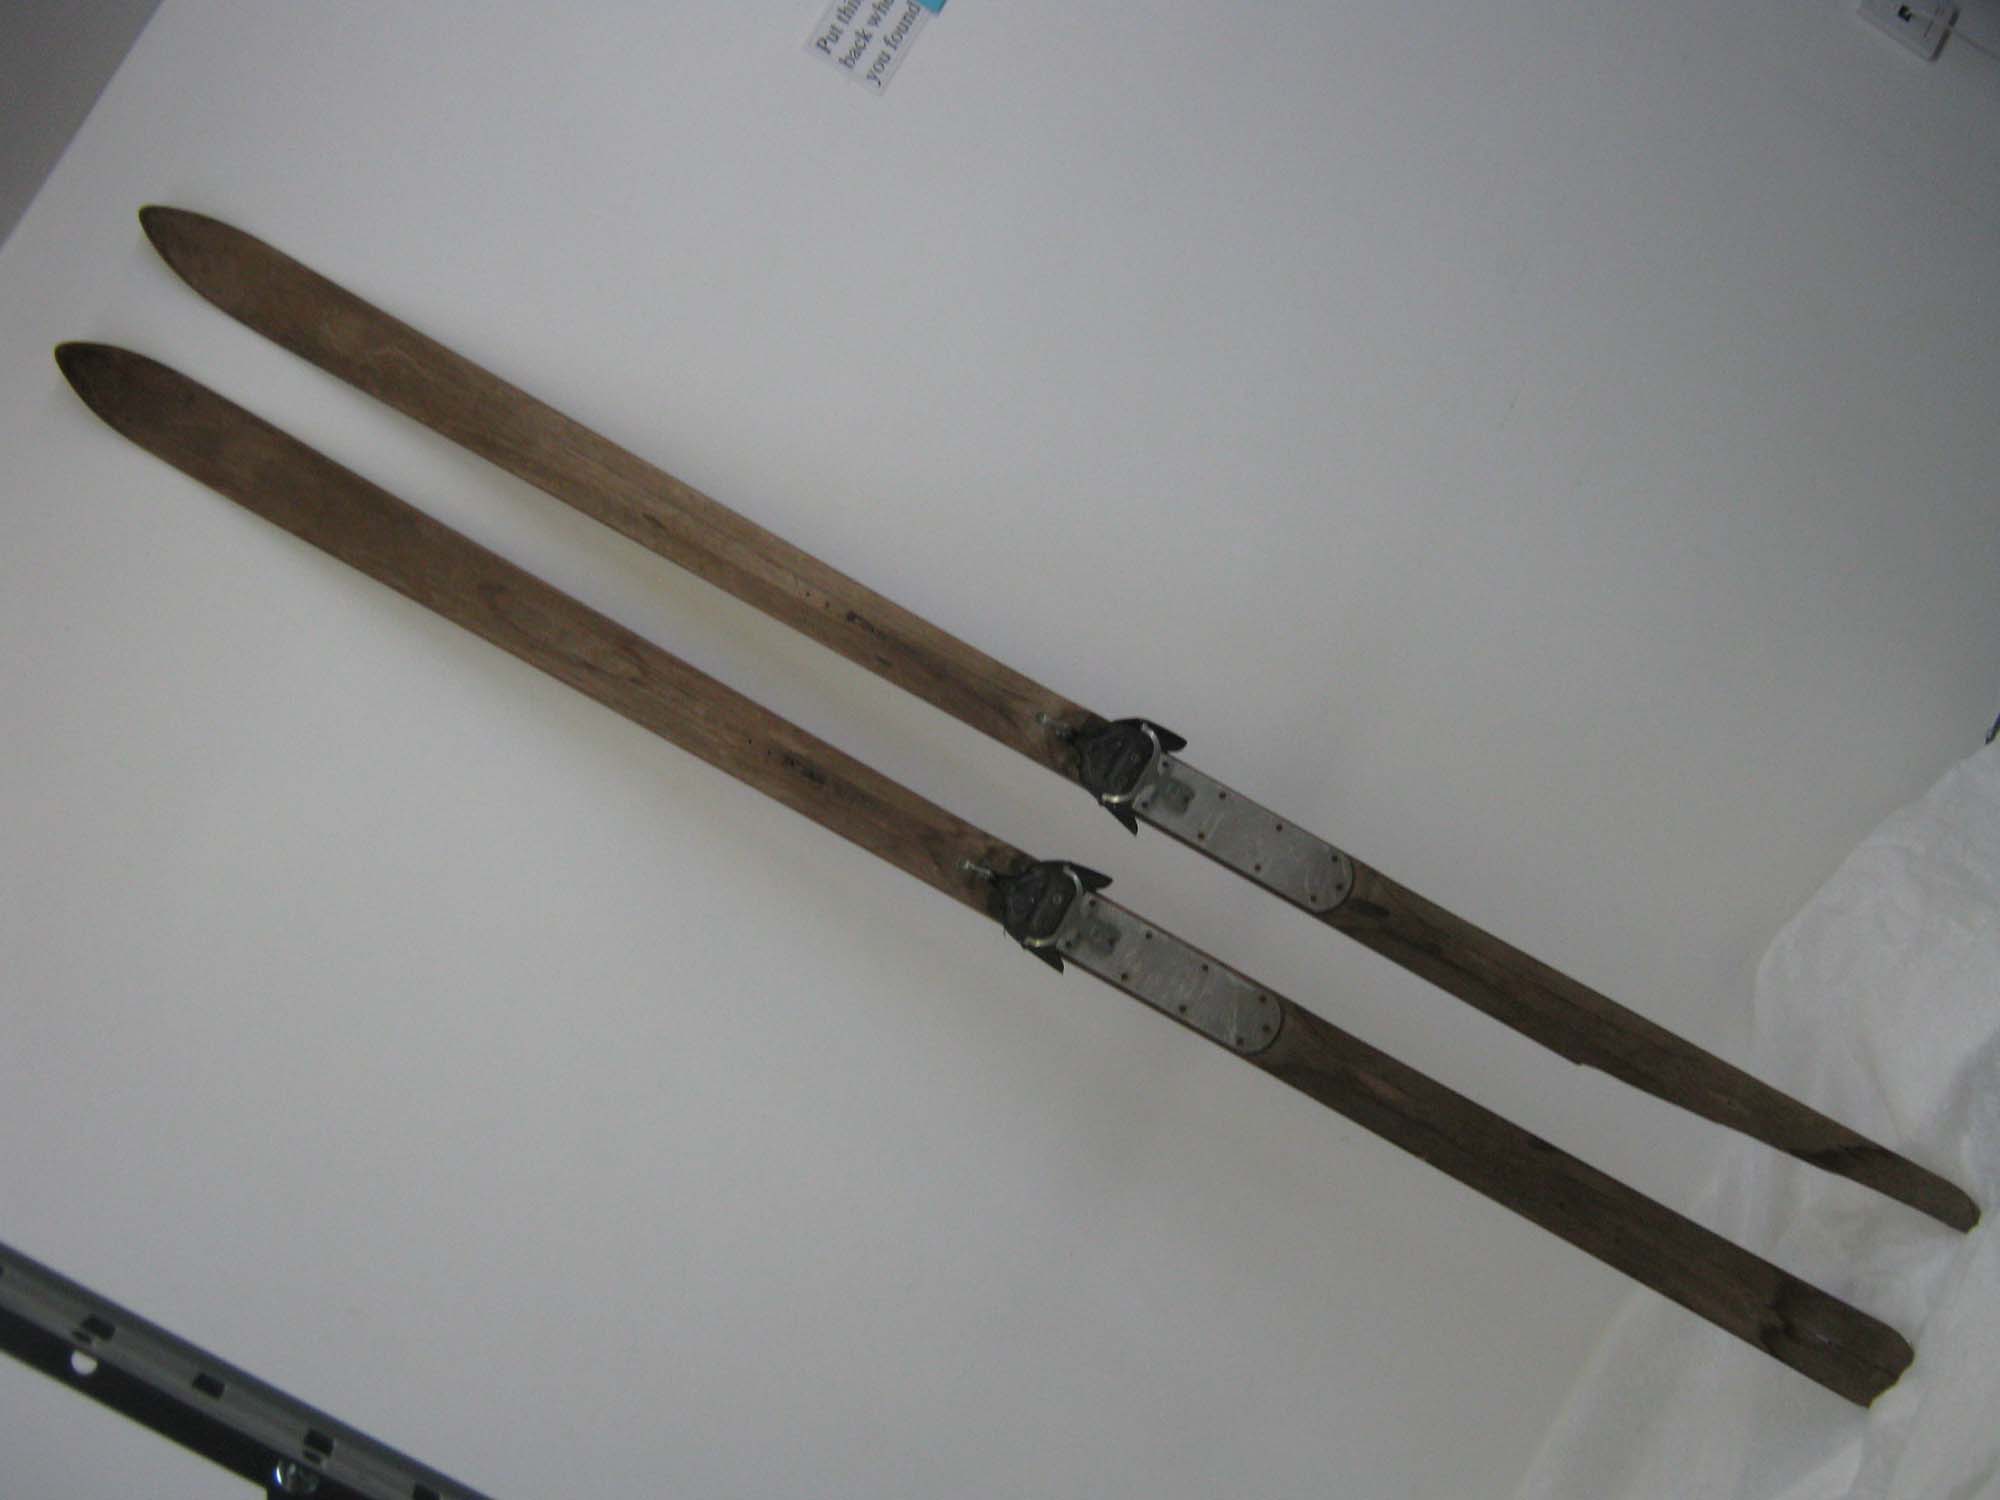 Pair of Used Wood Skis: Gallery Item 